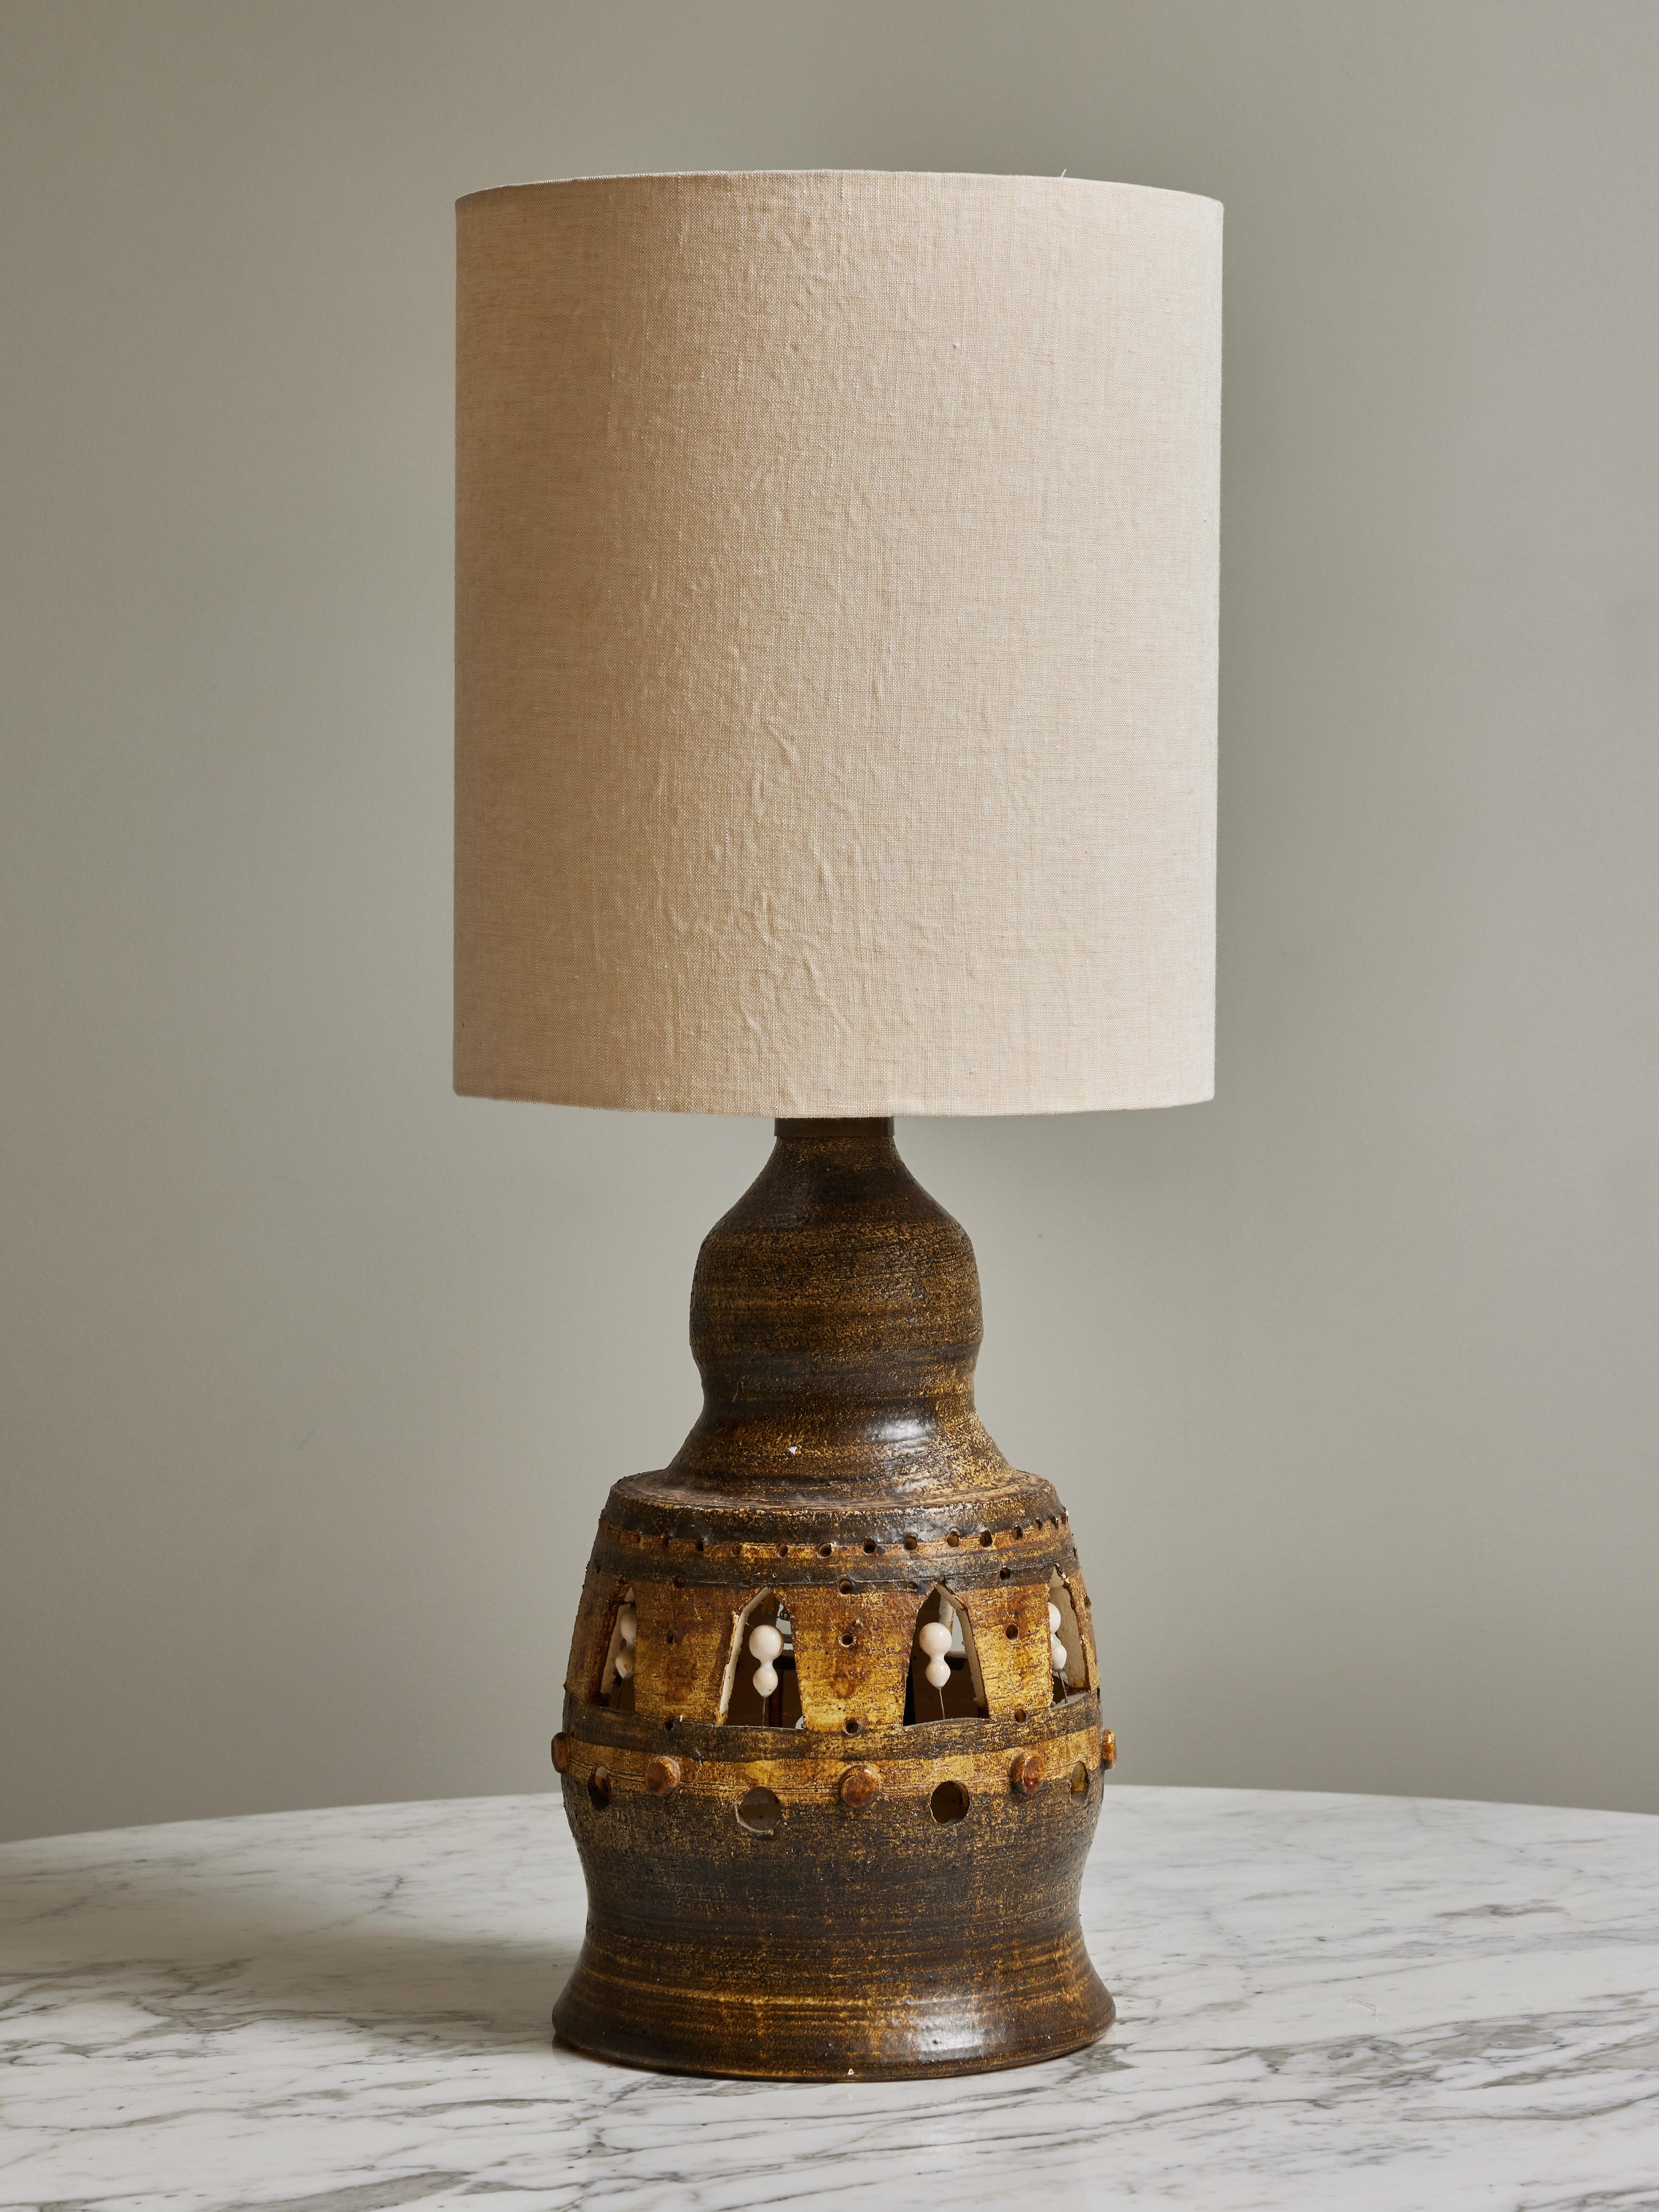 Lampe de table en céramique à glaçure différente par l'artiste français George Pelletier.
L'éclairage intérieur est aussi efficace qu'une ampoule ordinaire, cachée par un nouvel abat-jour.

Né en 1938 à Bruxelles, en Belgique, Georges Pelletier est